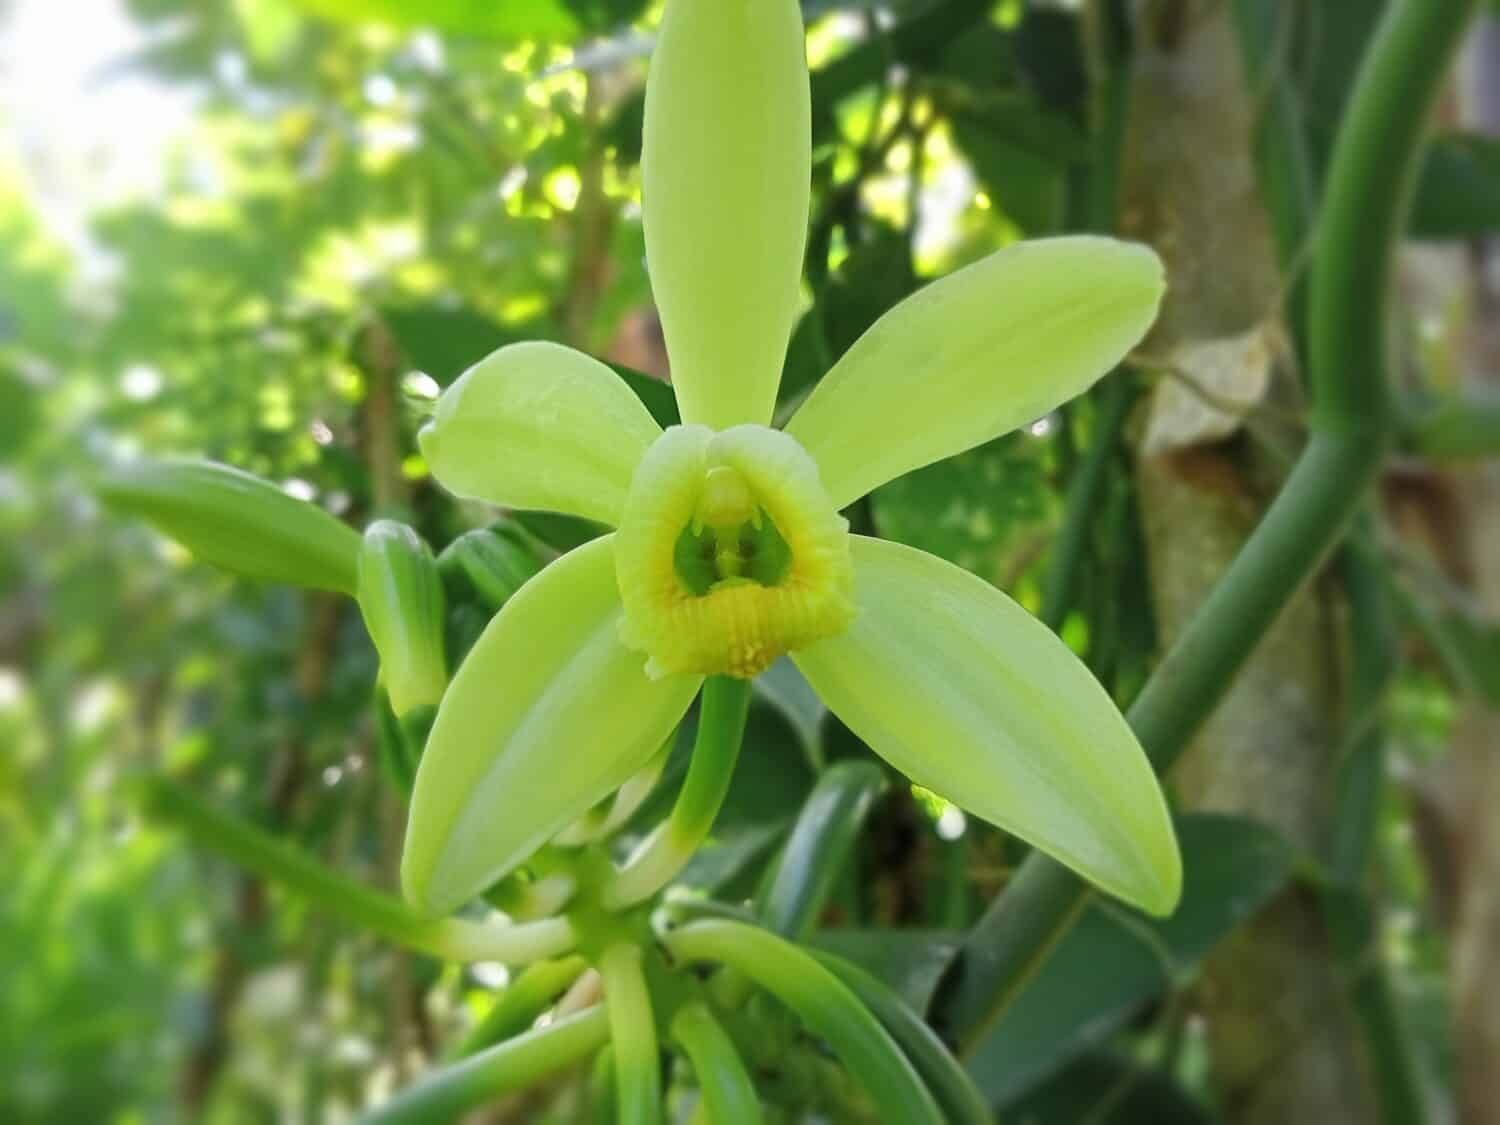 Fiore della pianta della vaniglia.